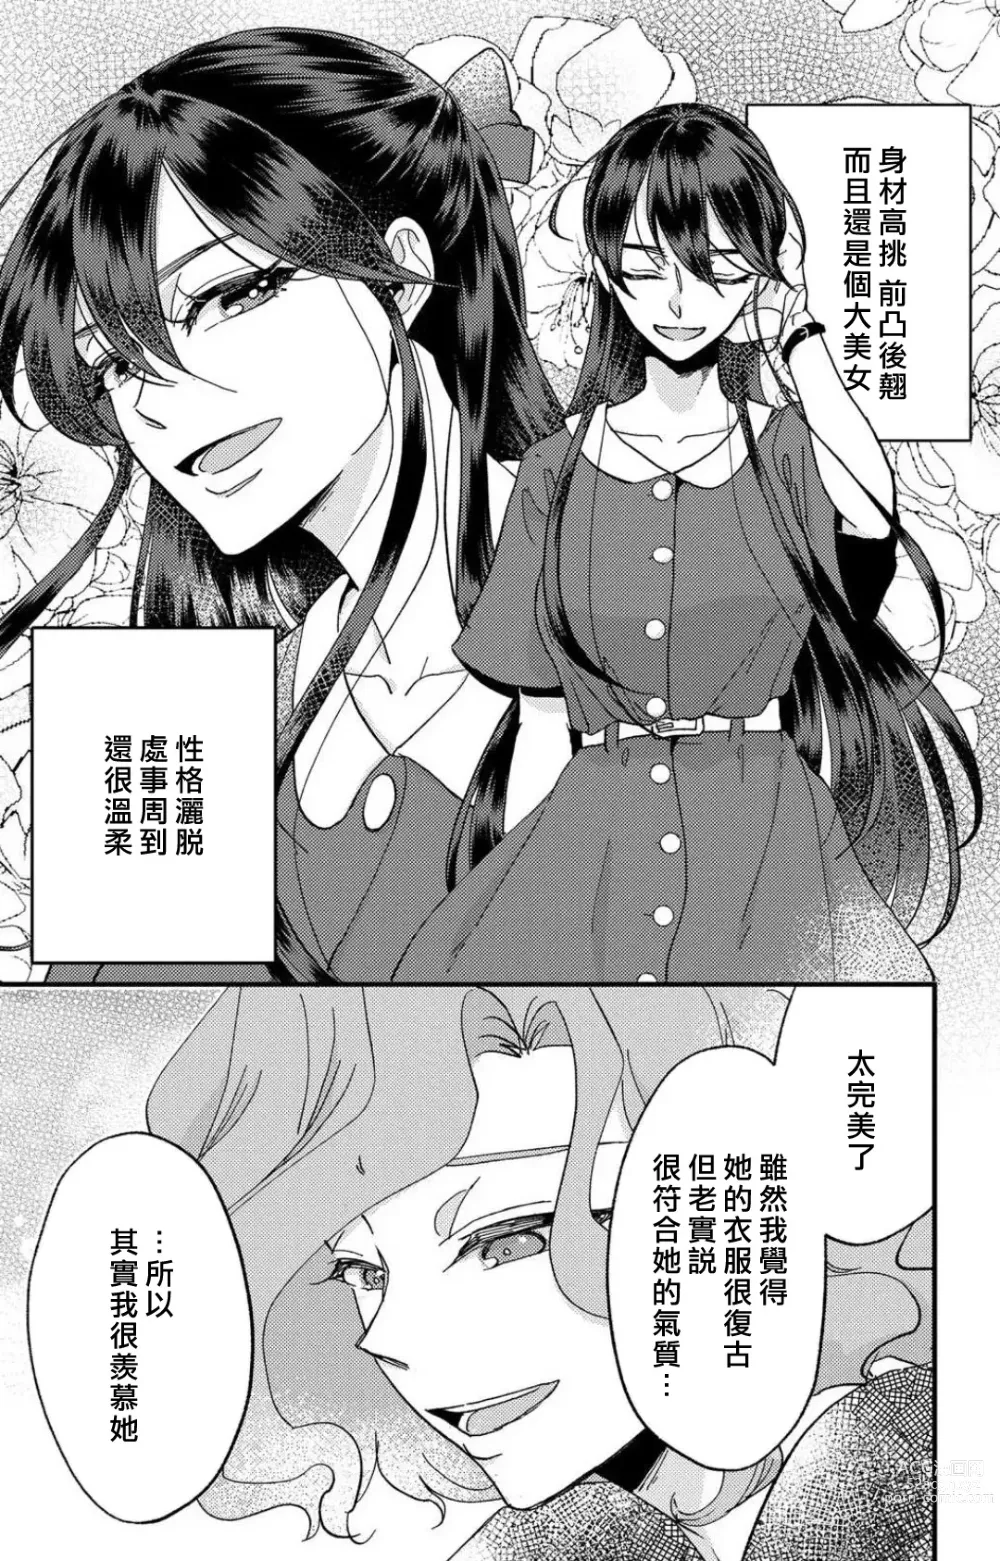 Page 165 of manga 败在他的眼泪攻势下 奈奈大小姐想被哭唧唧的男子推倒！ 1-5